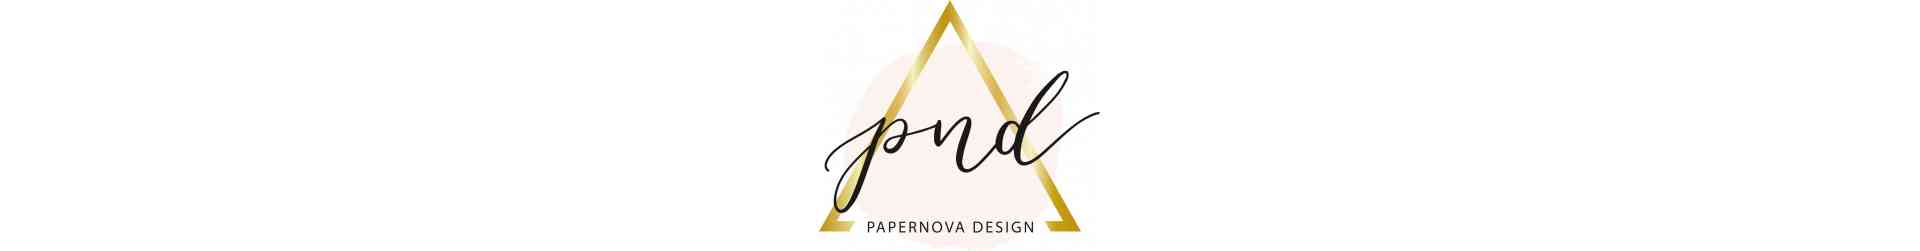 Papernova Design